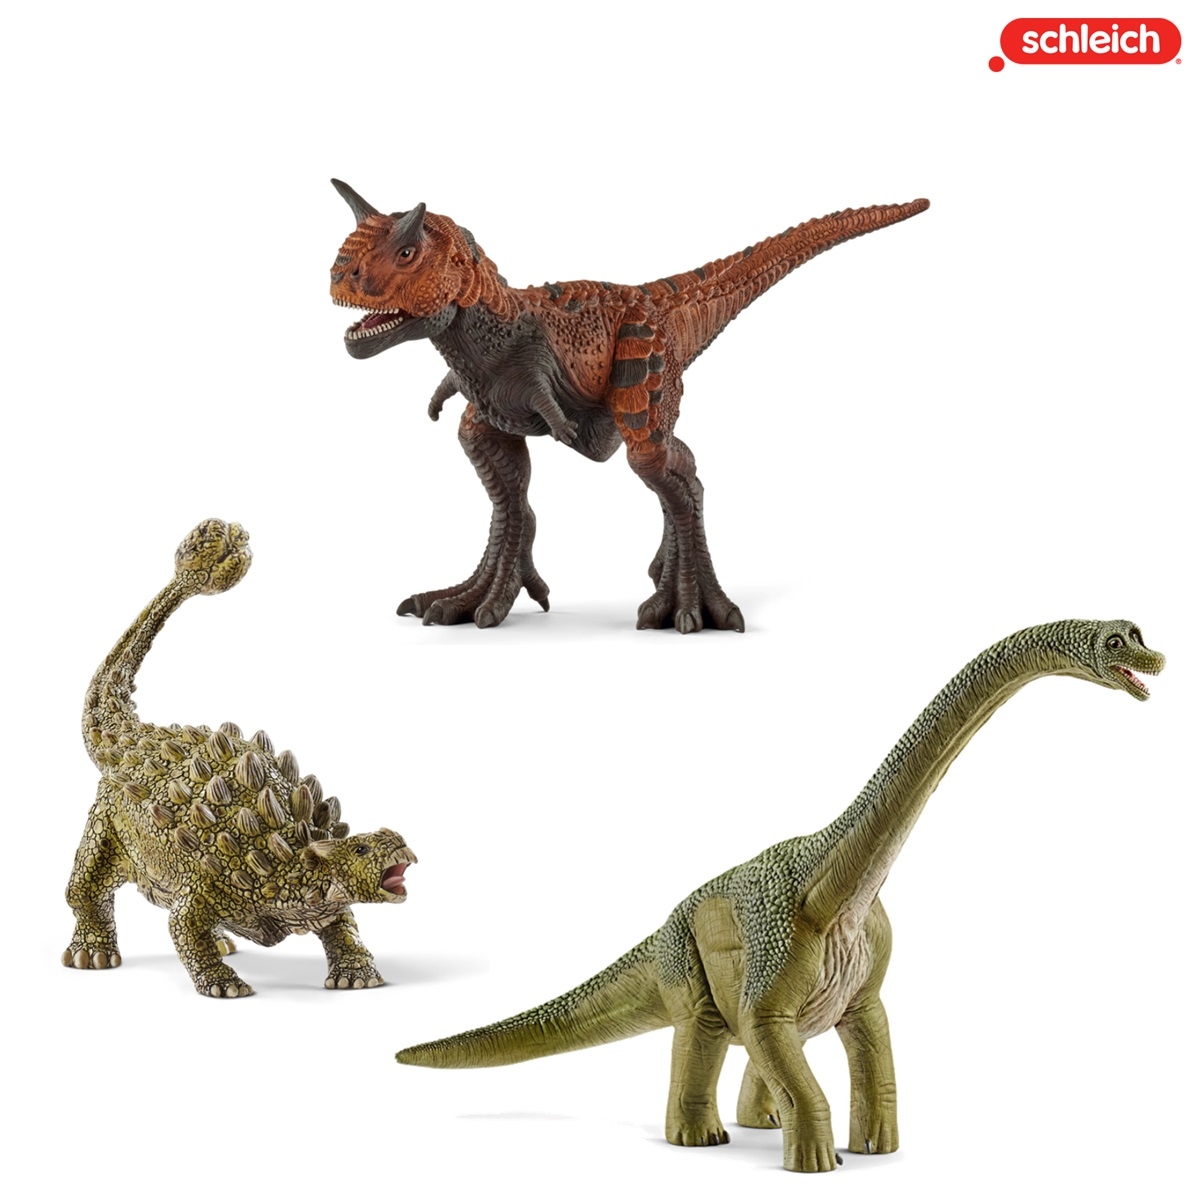 【シュライヒ】ブラキオサウルス・カルノタウルス・アンキロサウルス 恐竜セット